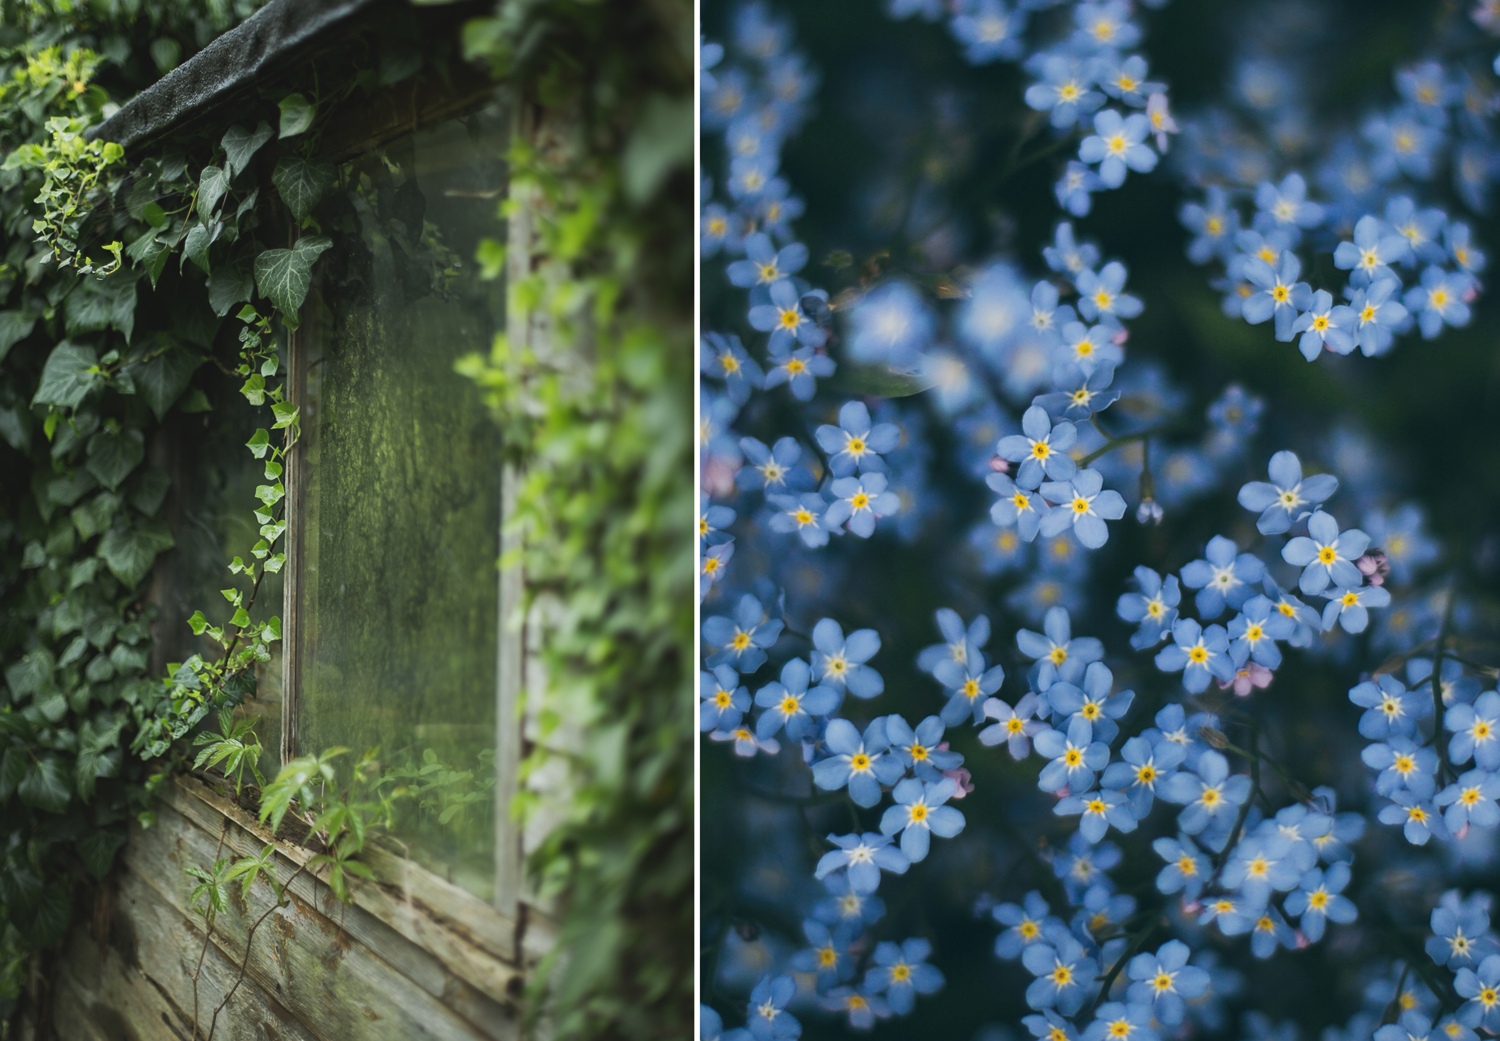 Anglia varázslatos kertjeibe visznek a magyar fotós képei